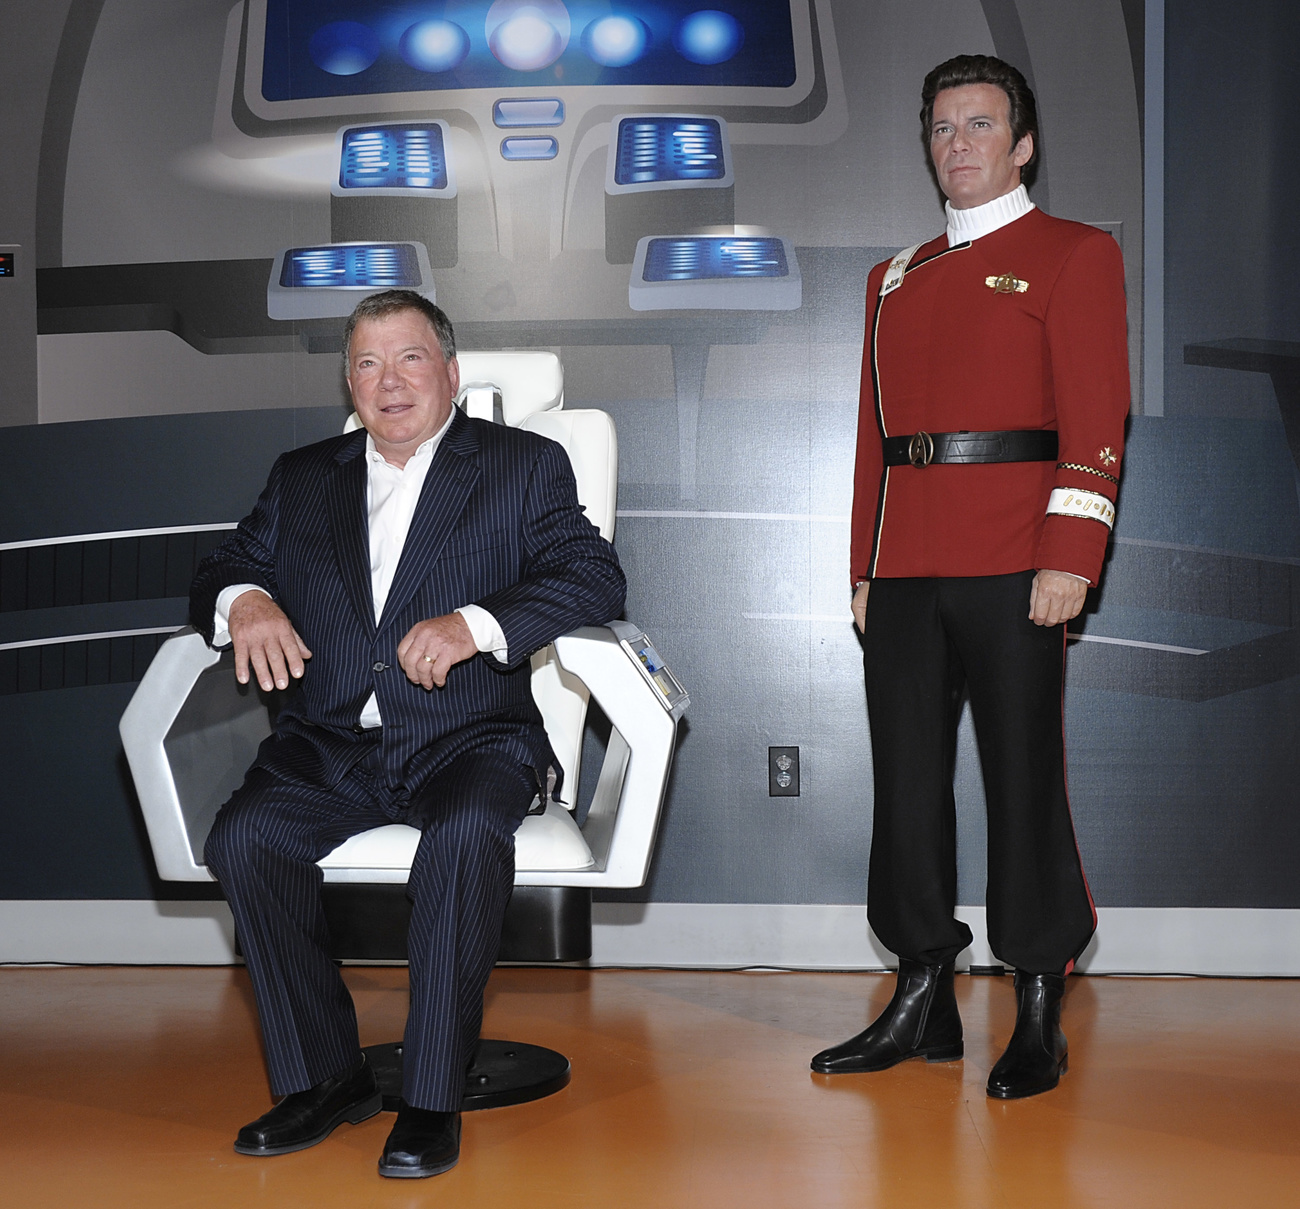 William Shatner sitzt neben einer Wachsfigur von sich selbst als Captain Kirk